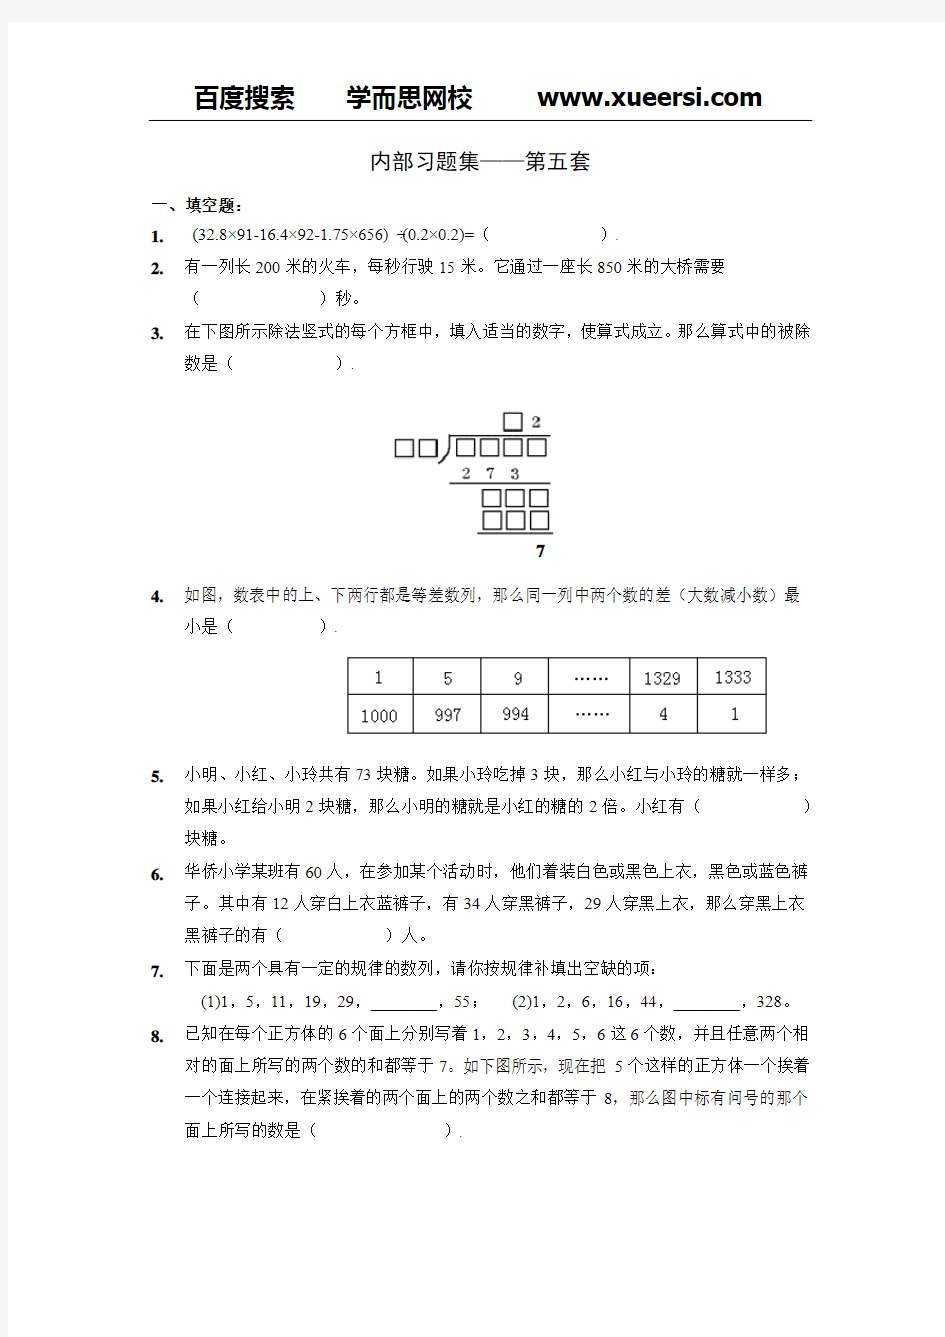 【数学】学而思网校内部奥数习题集.中年级(第5-8套)